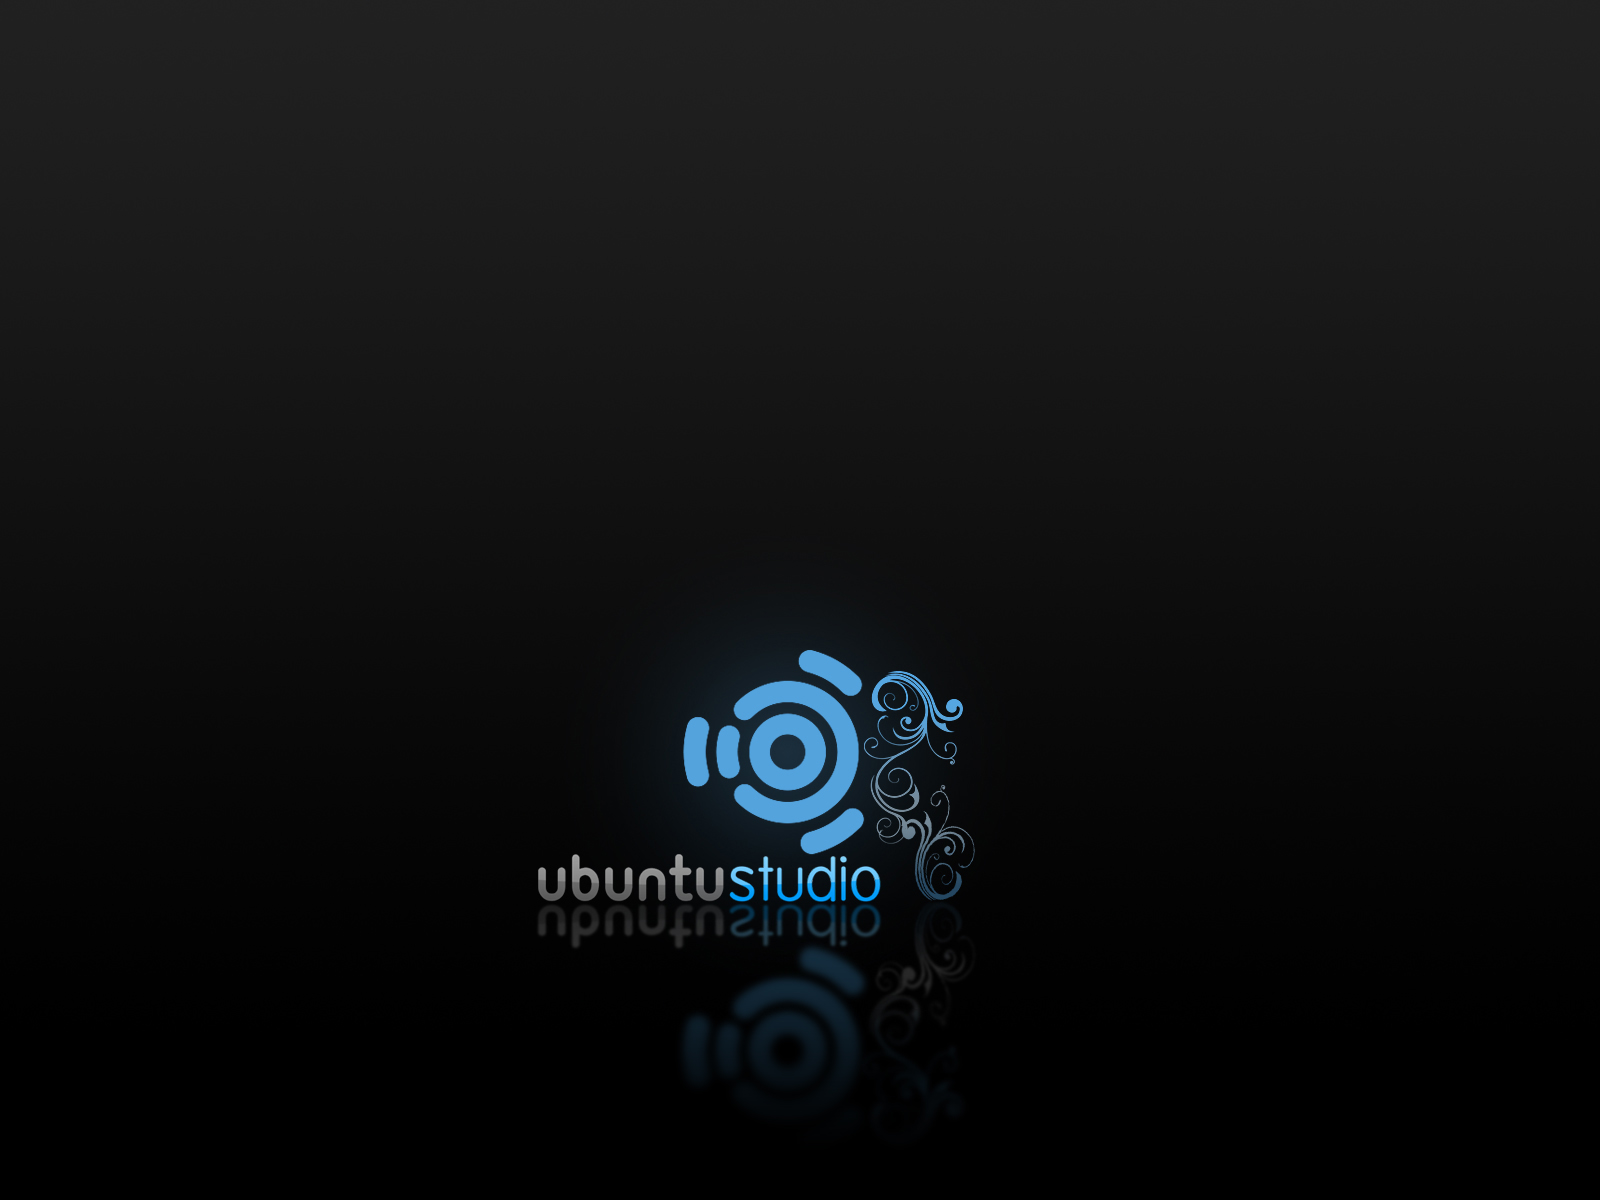 Weekly Eyecandy Amazing Ubuntu Studio Branded Wallpaper